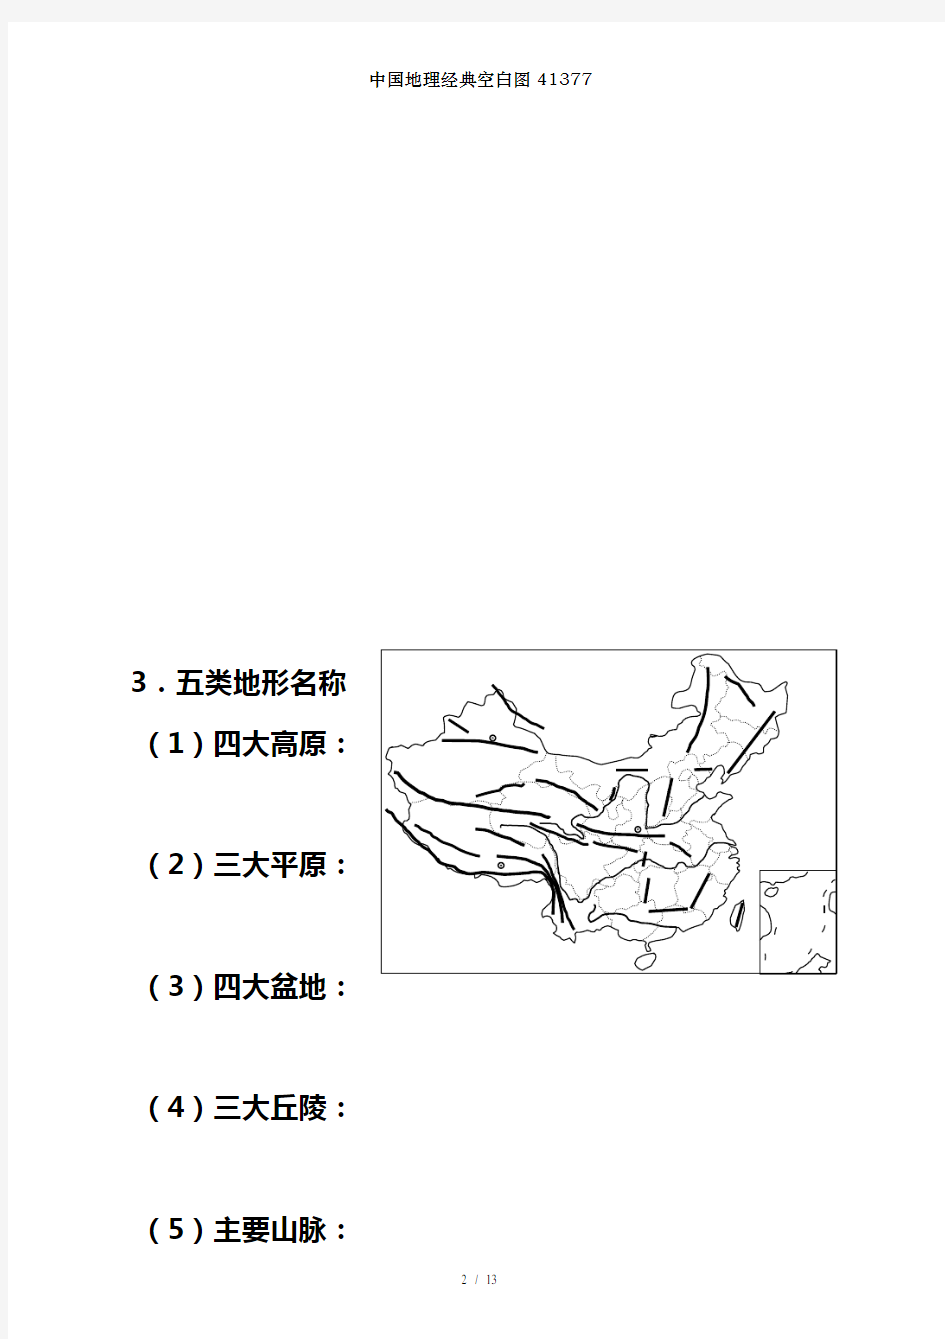 中国地理经典空白图41377